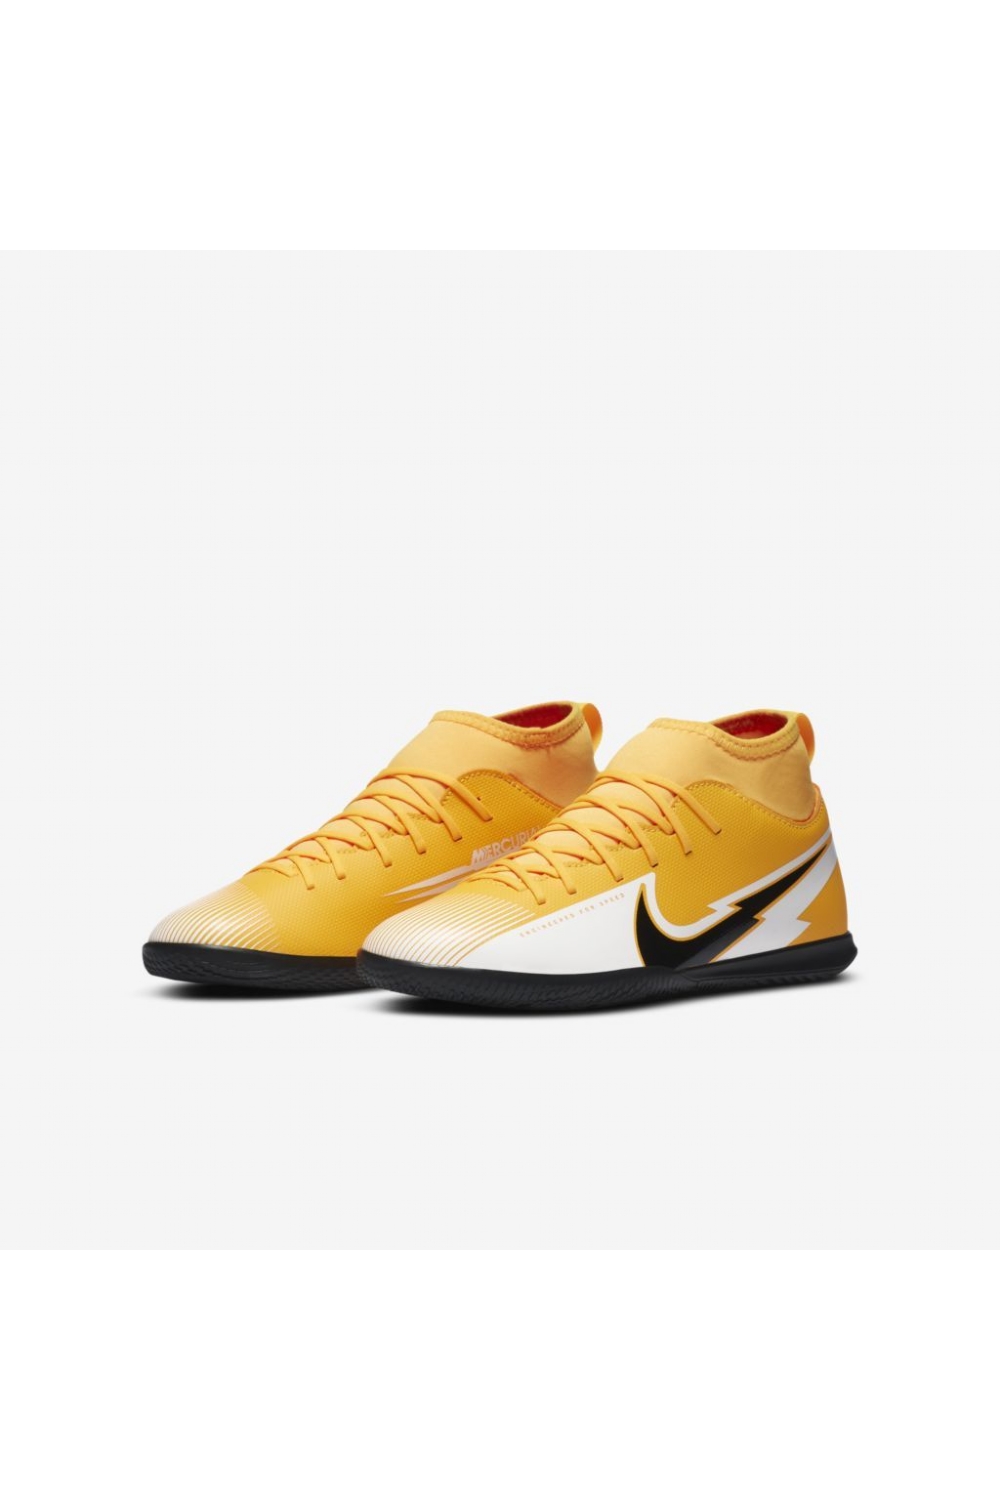 Bola Nike Society Arsenal Amarela - Compre Agora